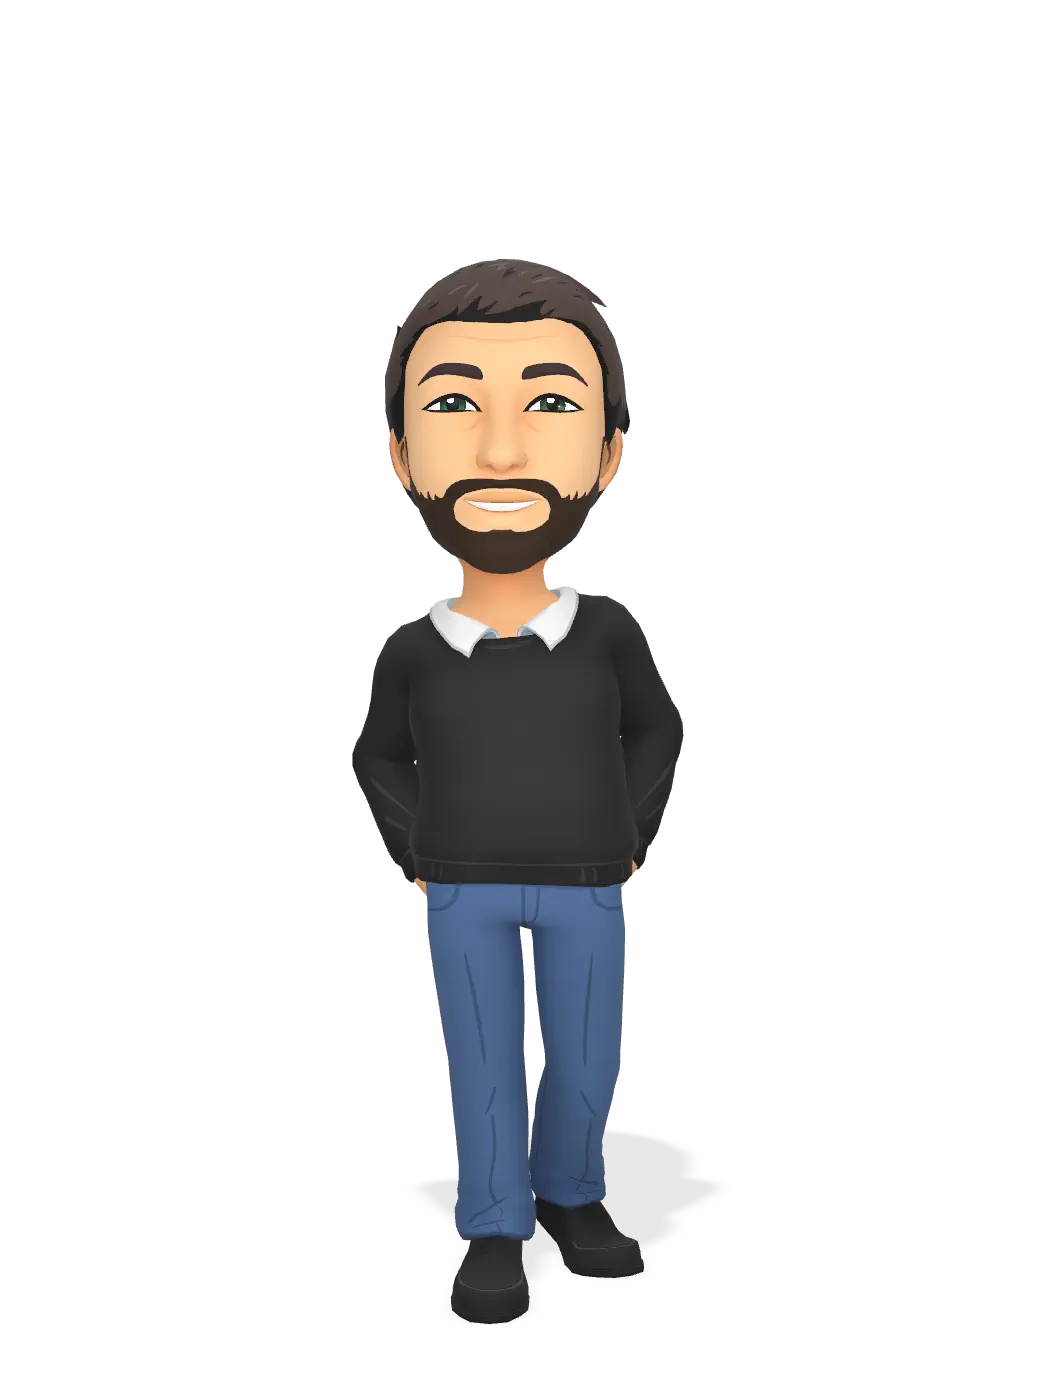 3D Bitmoji for acmuv avatar